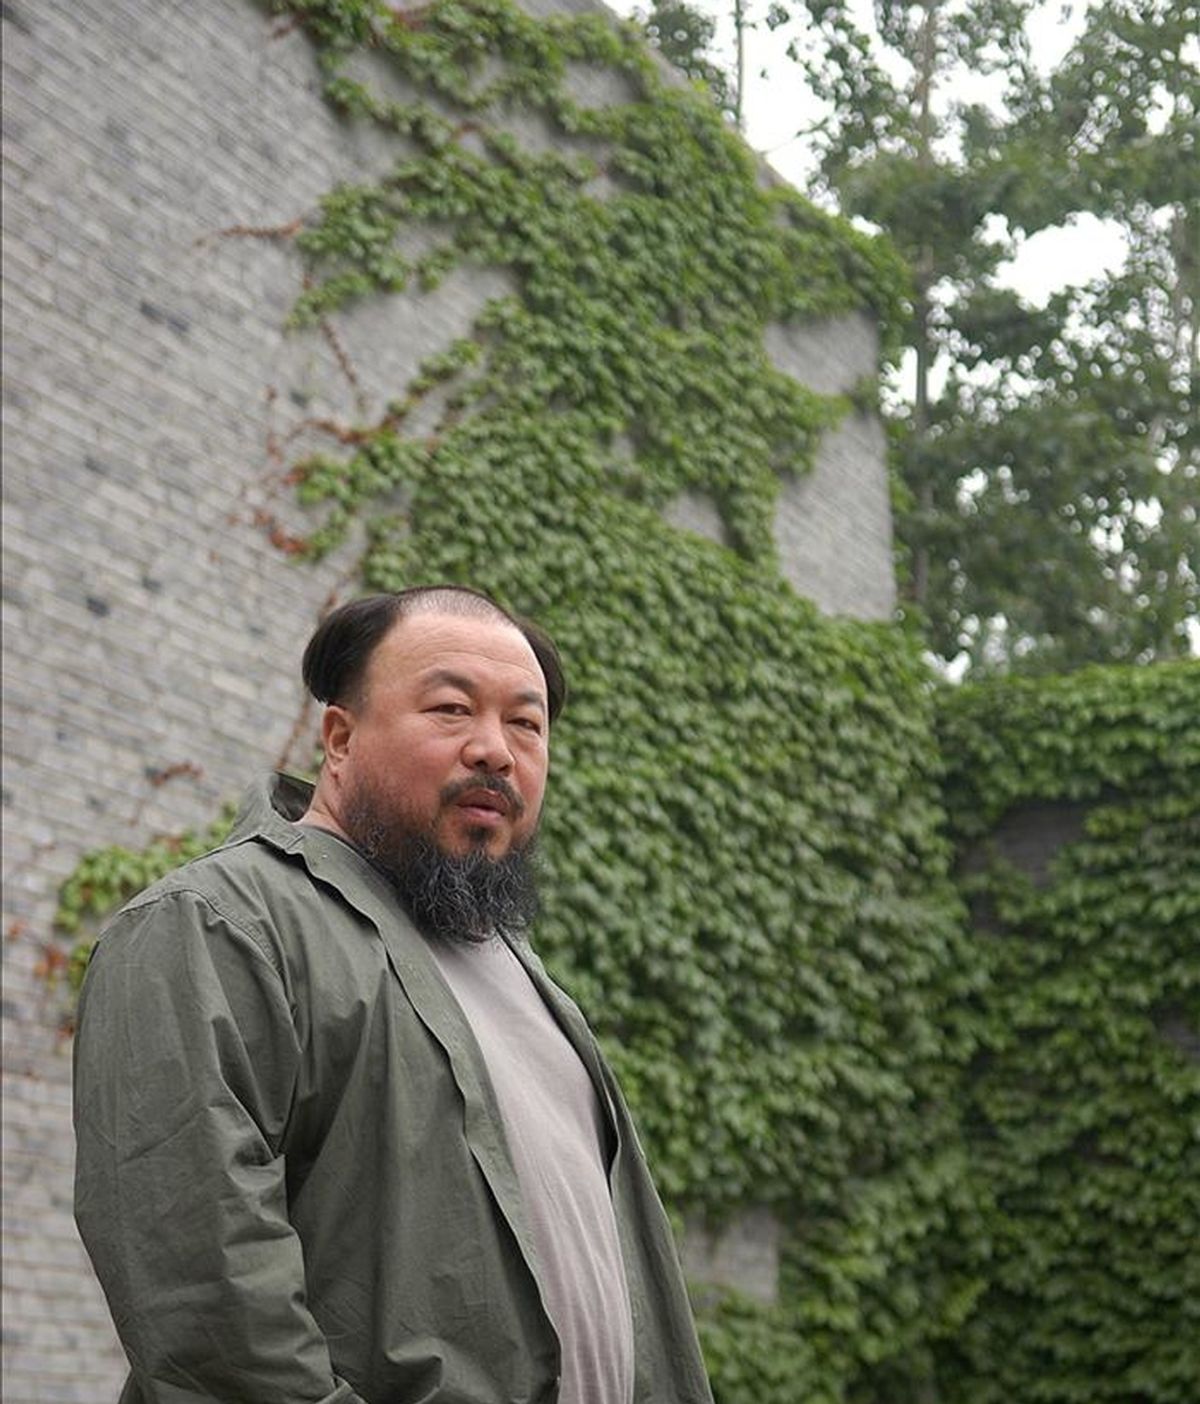 Fotografía de archivo suministrada el jueves 7 de abril , que muestra al artista chino Ai Weiwei en su estudio en Pekín (China). EFE/Archivo